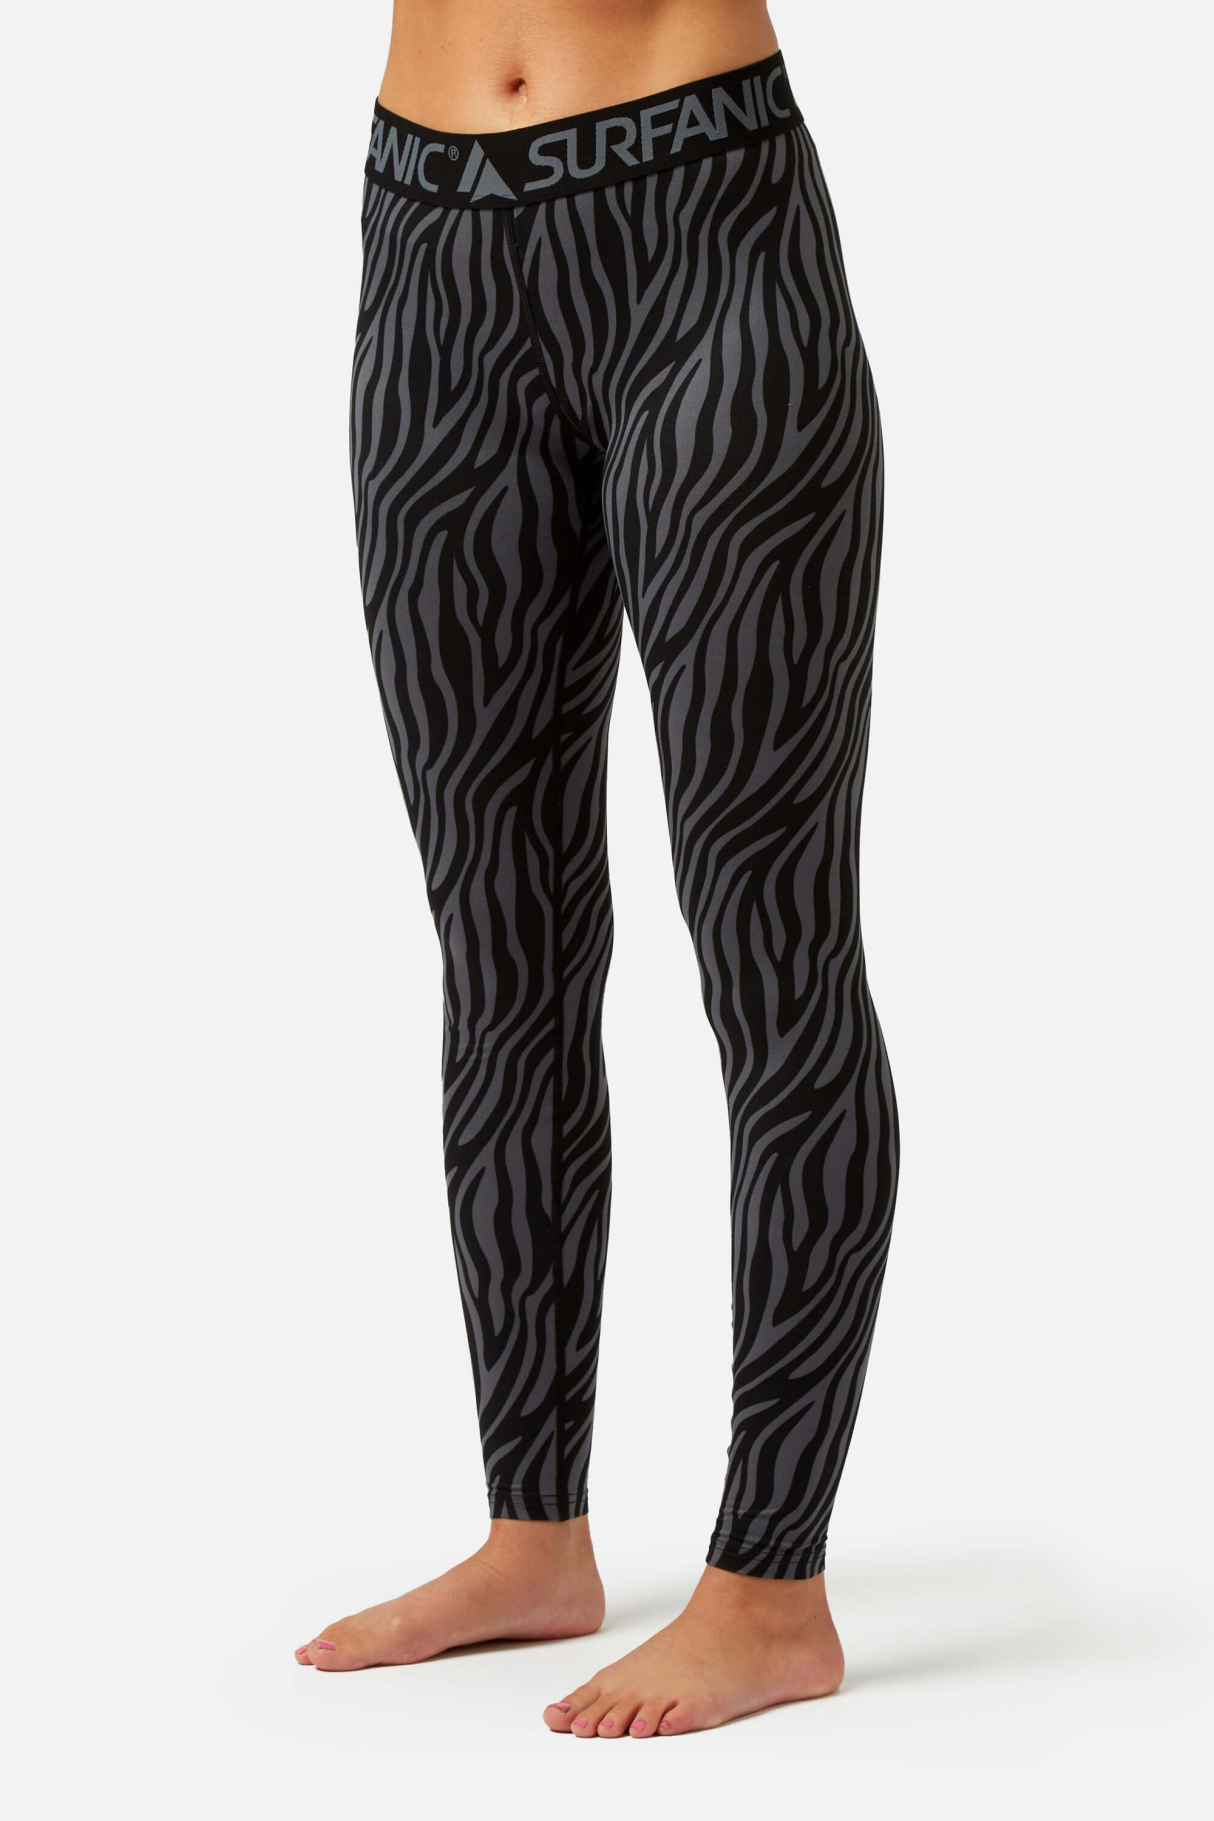 Термобелье панталоны COZY LIMITED EDITION LONG JOHN женские Surfanic, цвет черный 1, размер XL - фото 1